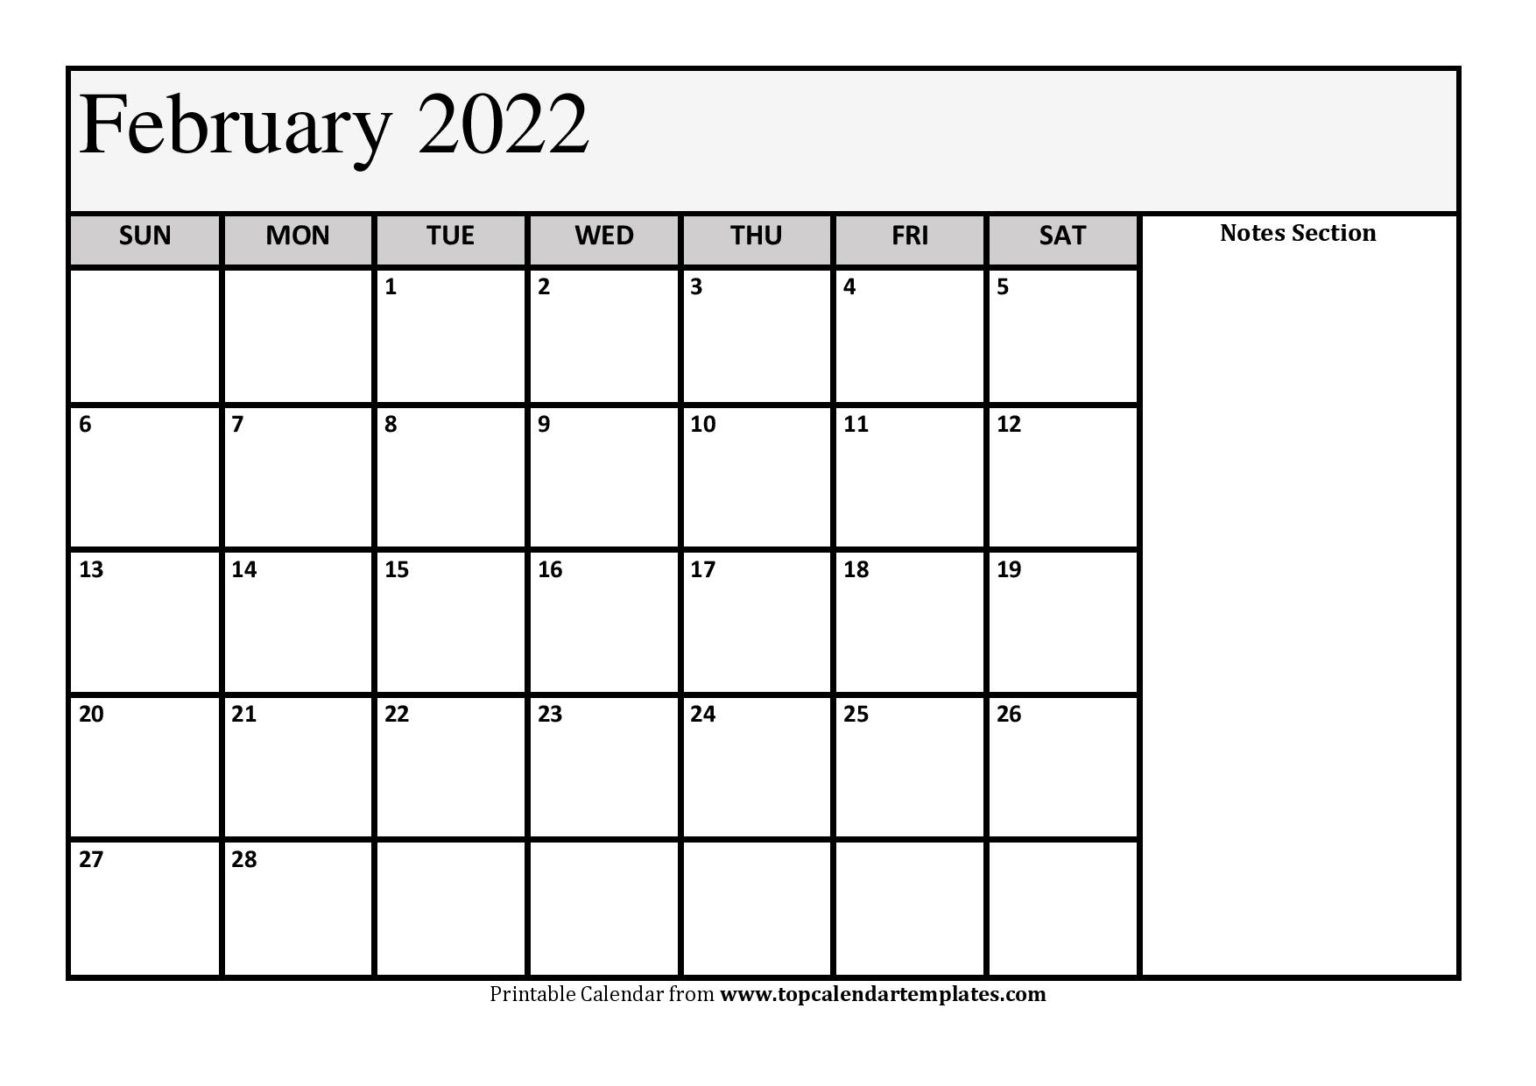 Printable February 2022 Calendar Template (Pdf, Word, Excel)  How To Make A Calendar For 2022